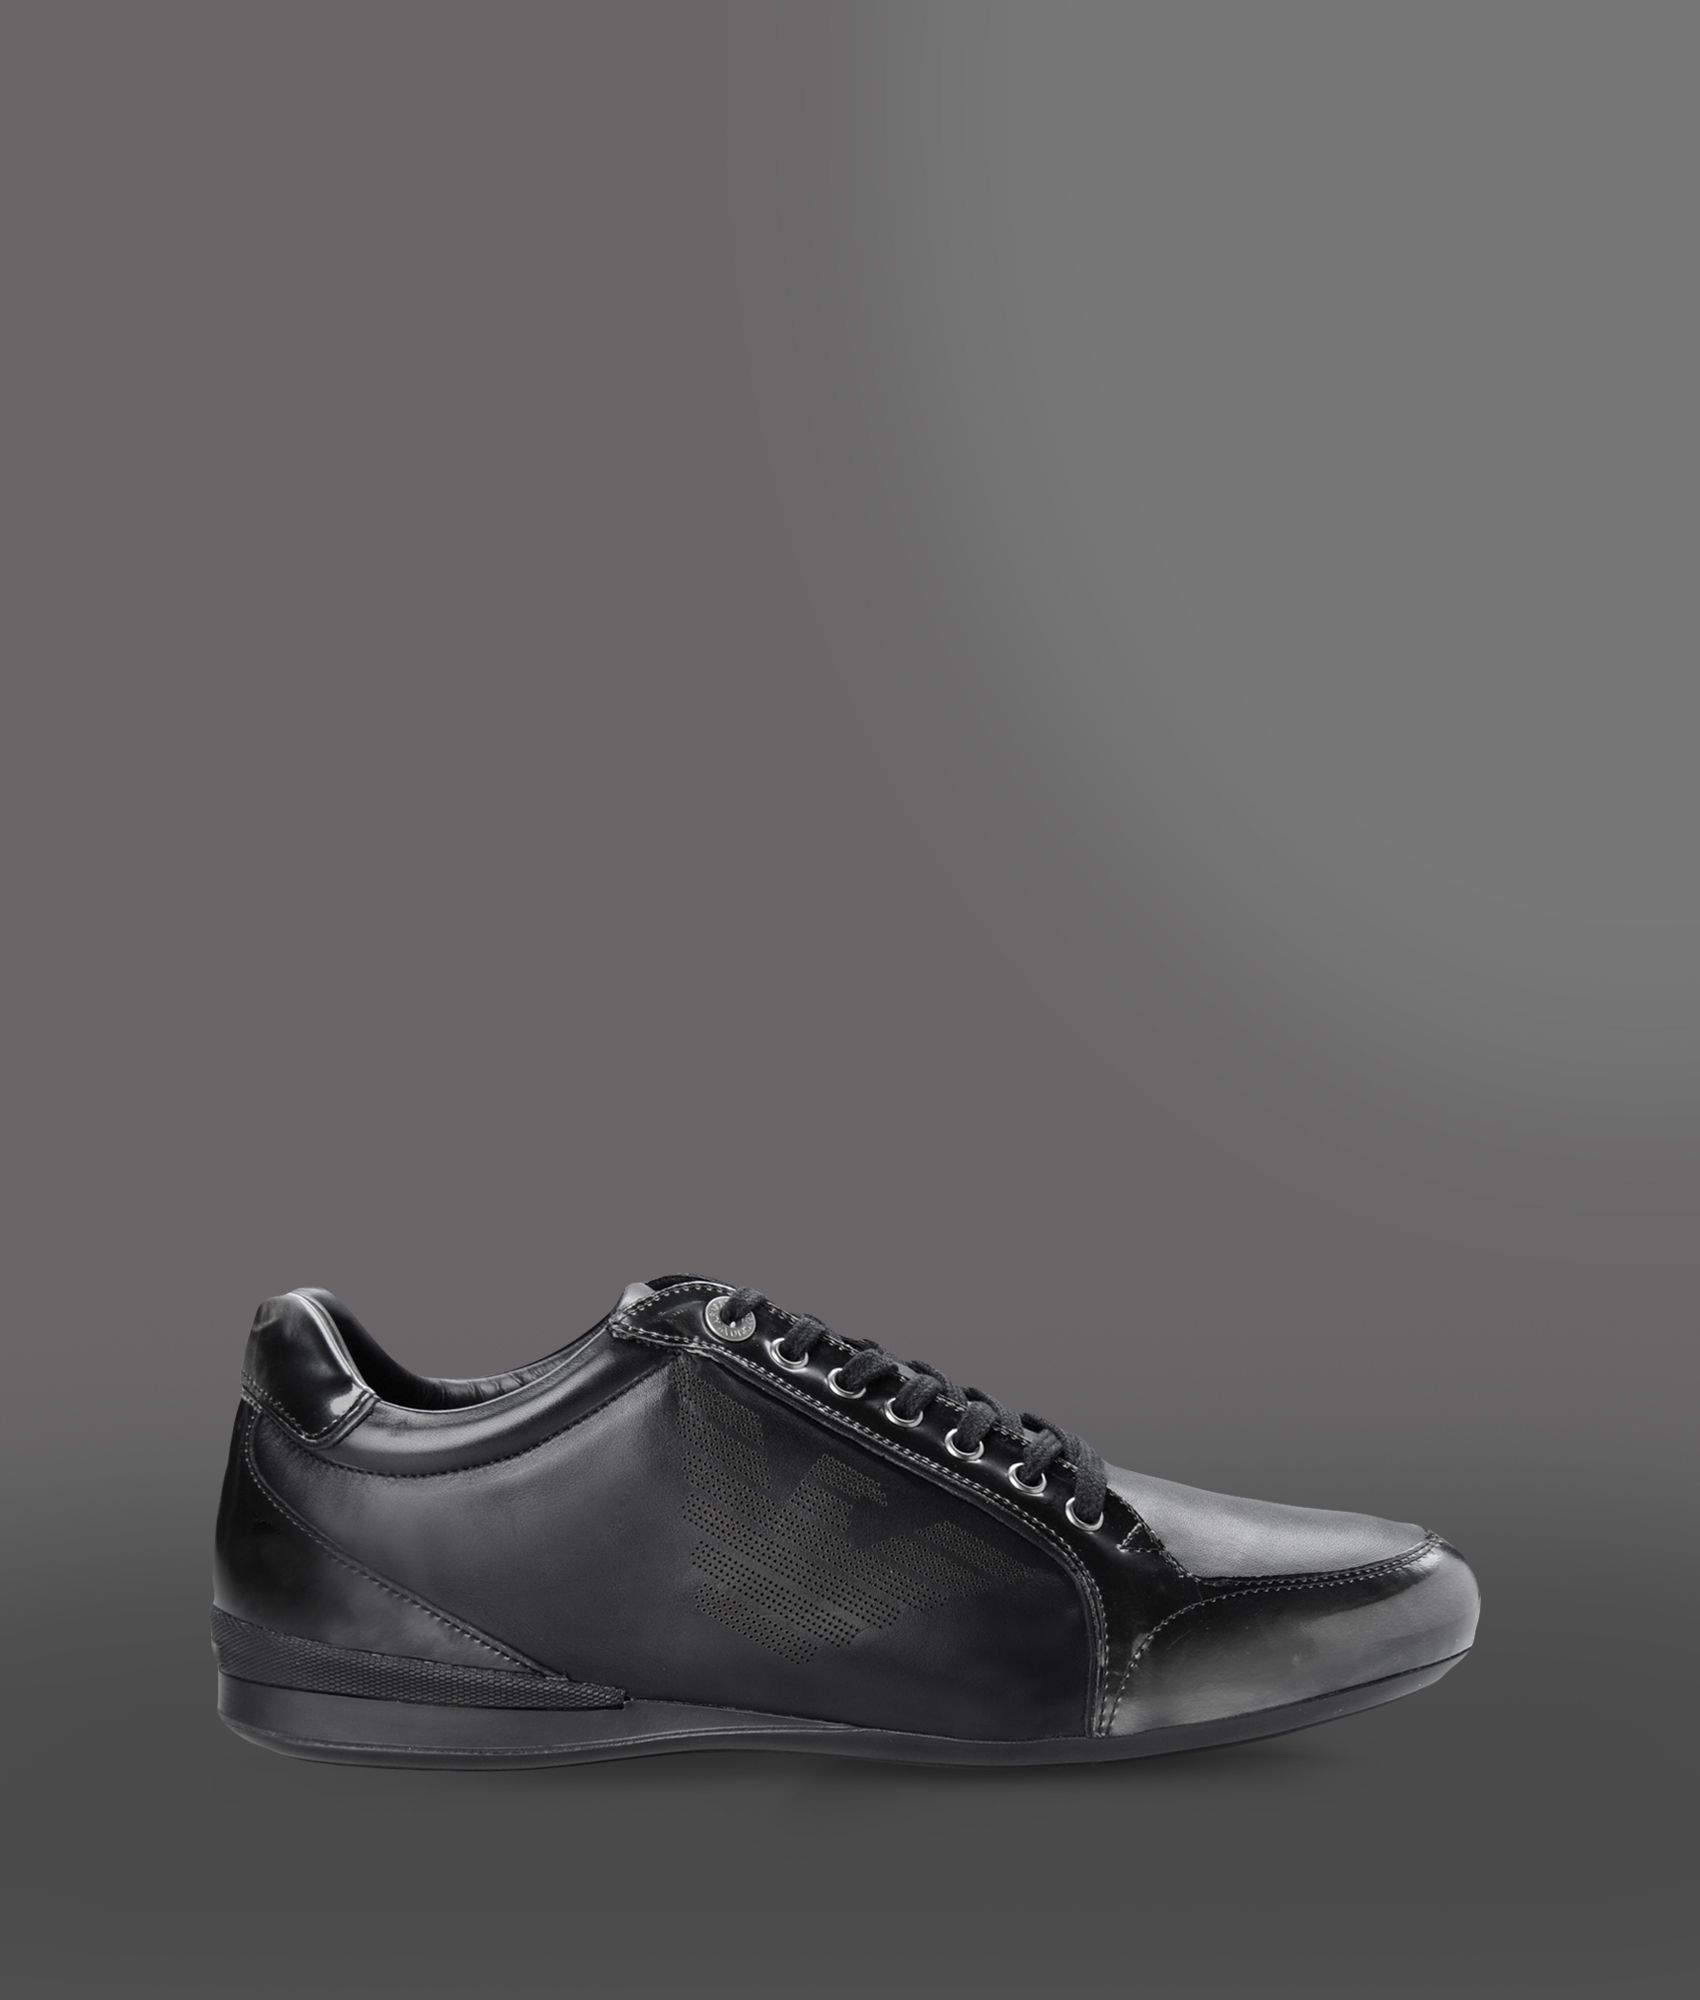 Emporio Armani Sneakers in Black for Men - Lyst